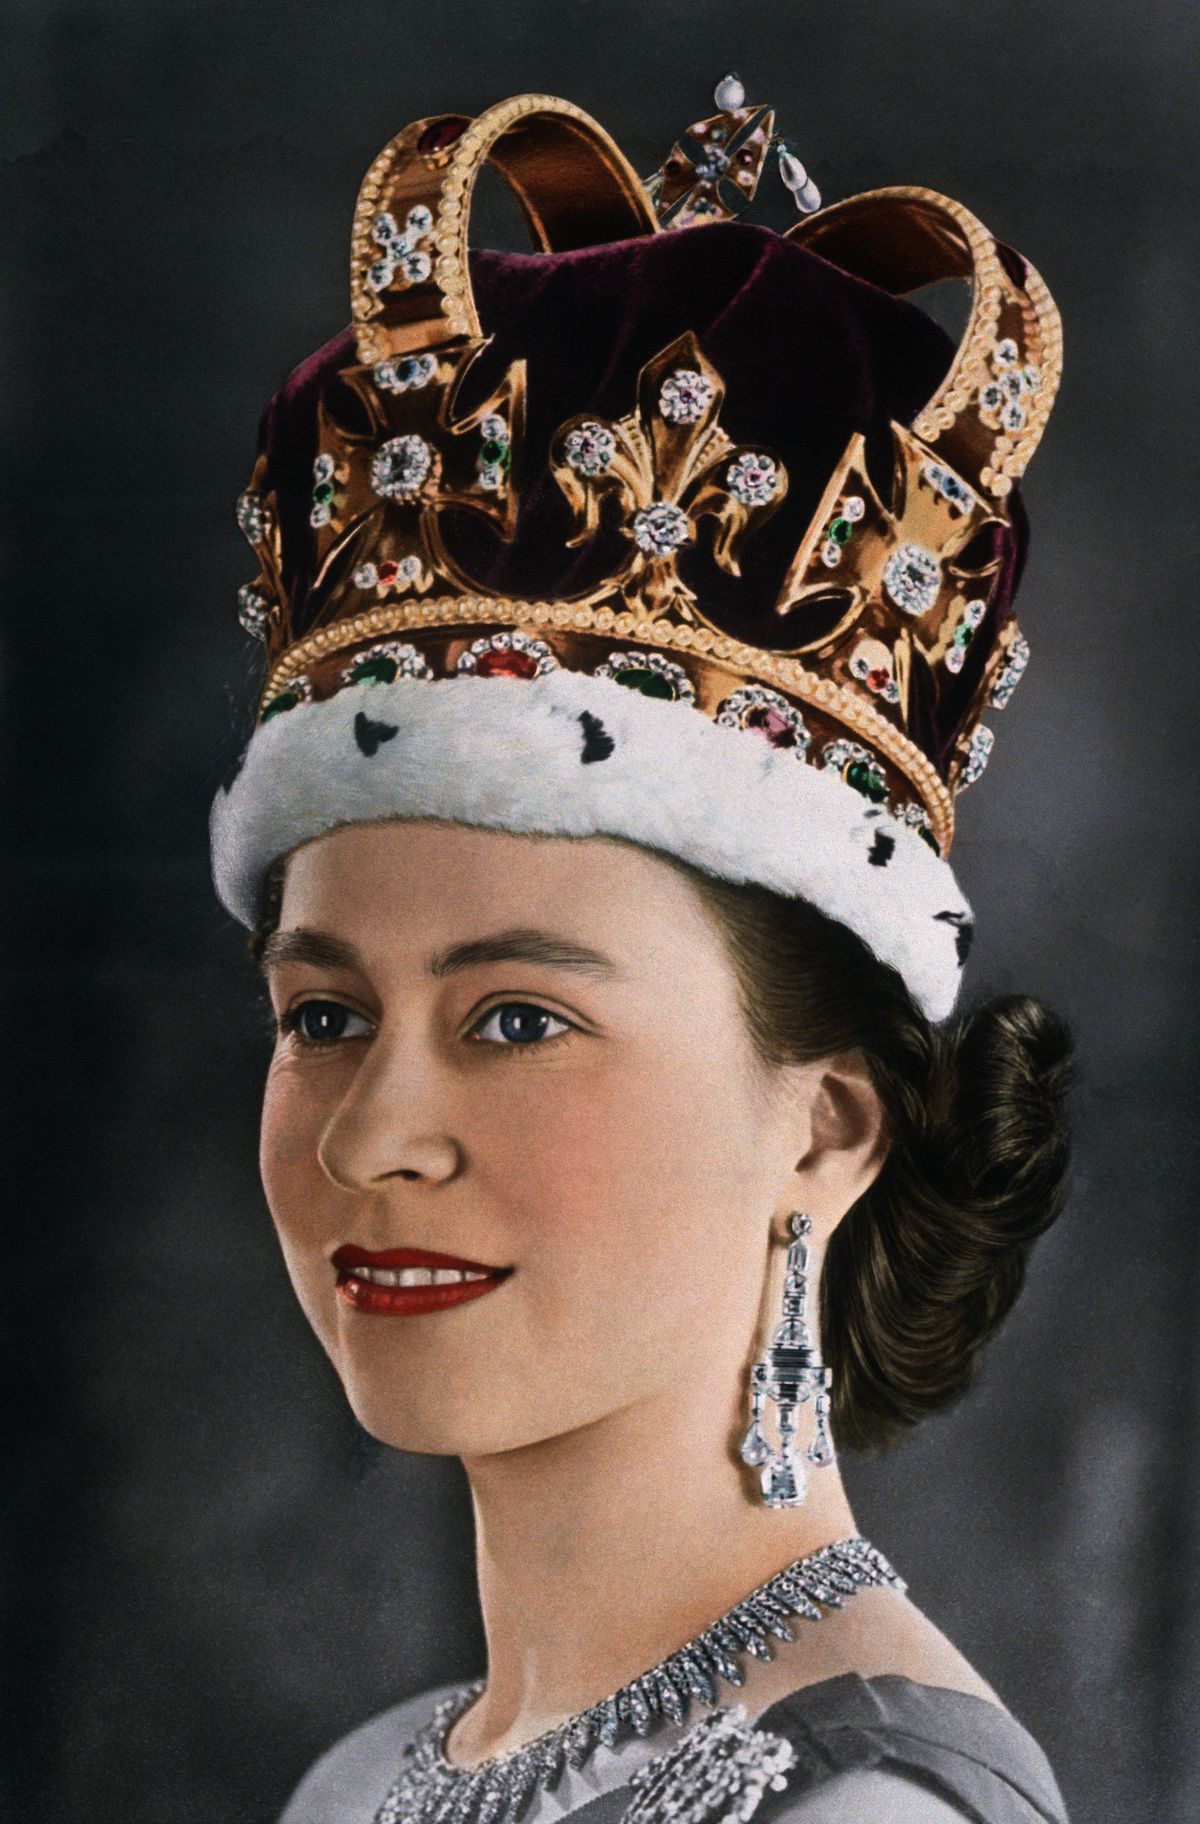 Khi đăng quang vào năm 1953, Nữ hoàng Elizabeth II đã sử dụng màu son đặc chế riêng của thương hiệu mỹ phẩm nổi tiếng Clarins để phù hợp với áo choàng của bà